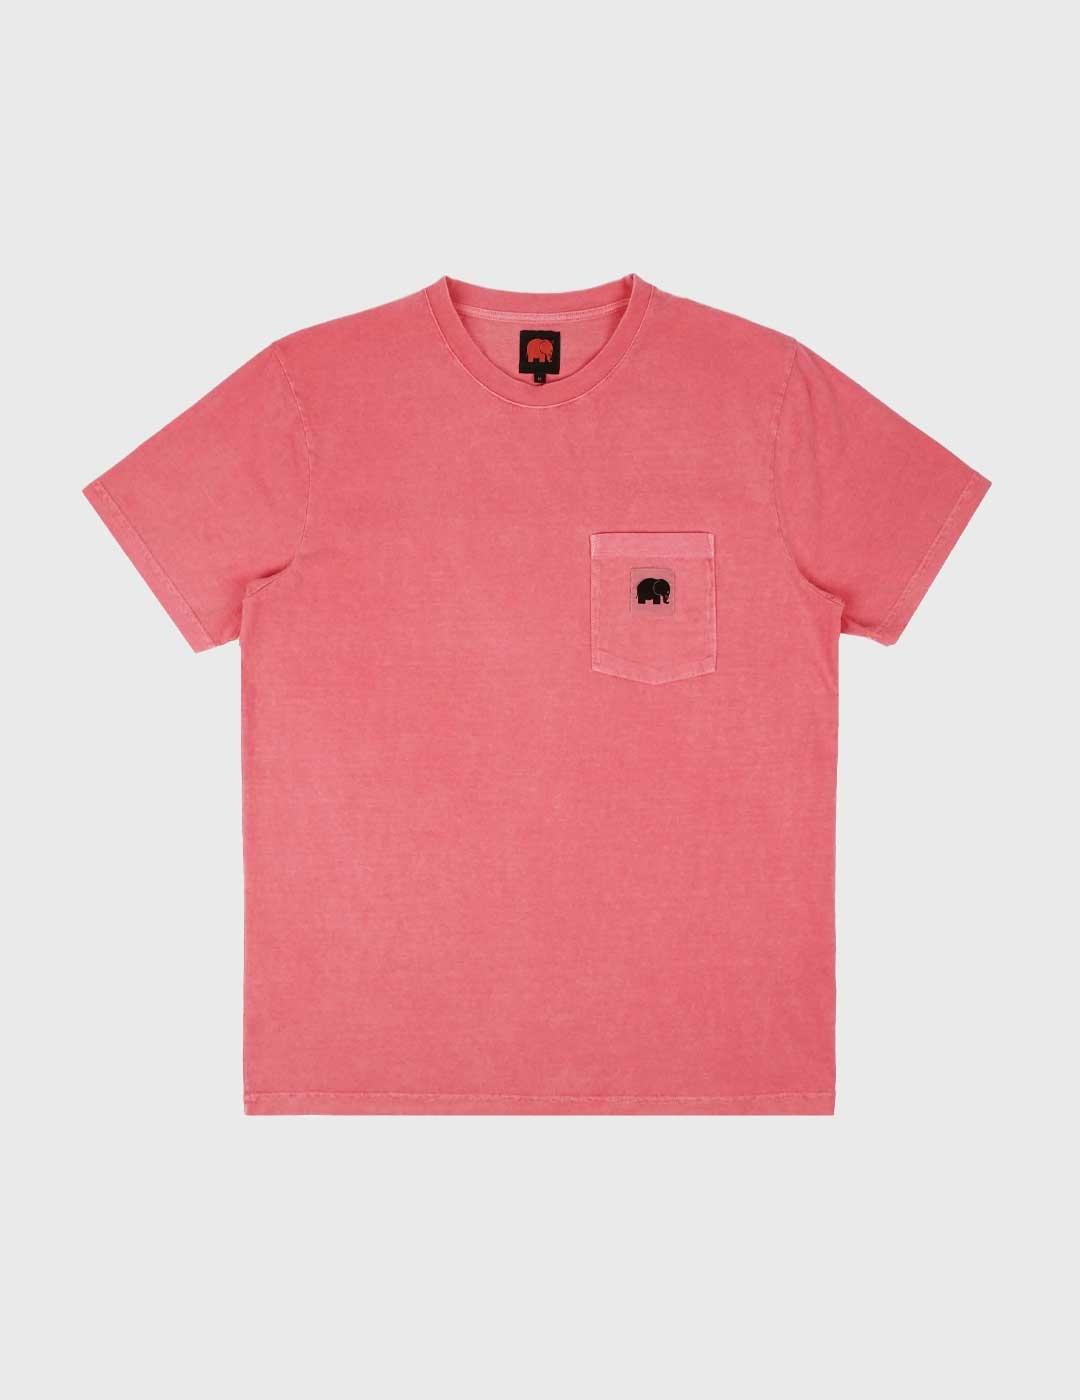 Trendsplant Garza T.Shirt Camiseta rosa para hombre